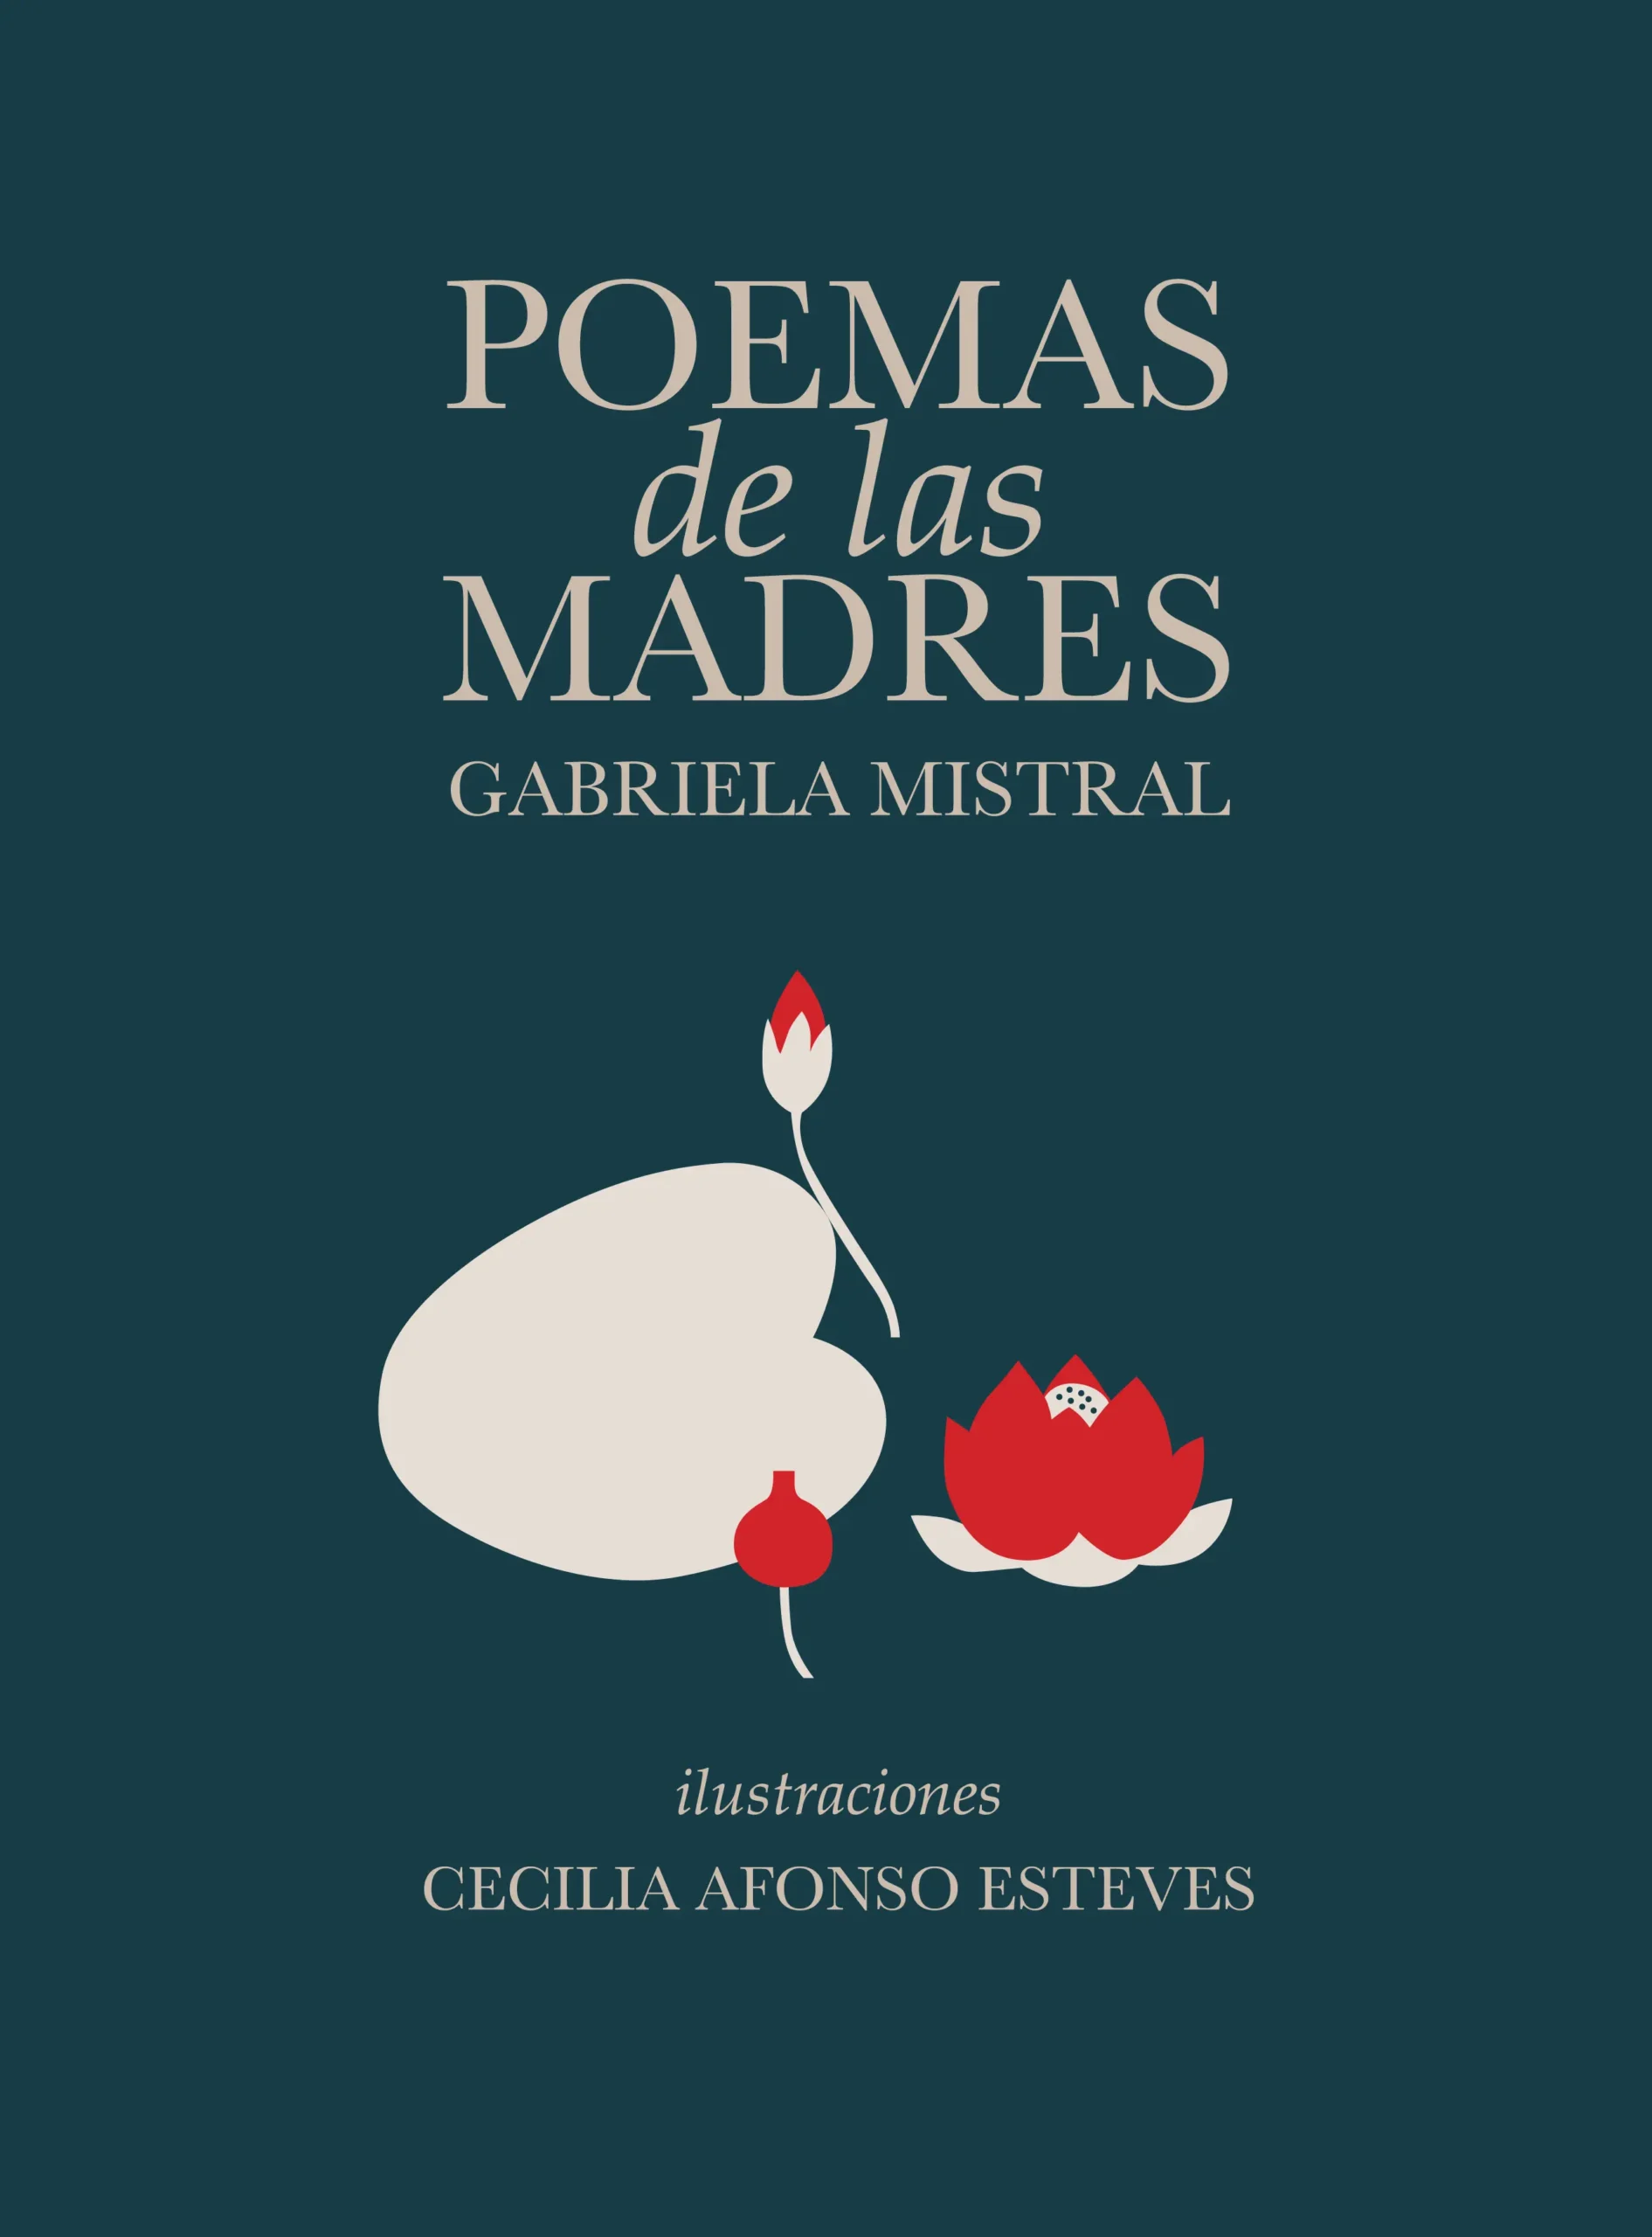 poemas de las madres gabriela mistral - Cuando pierdes a tu madre poema